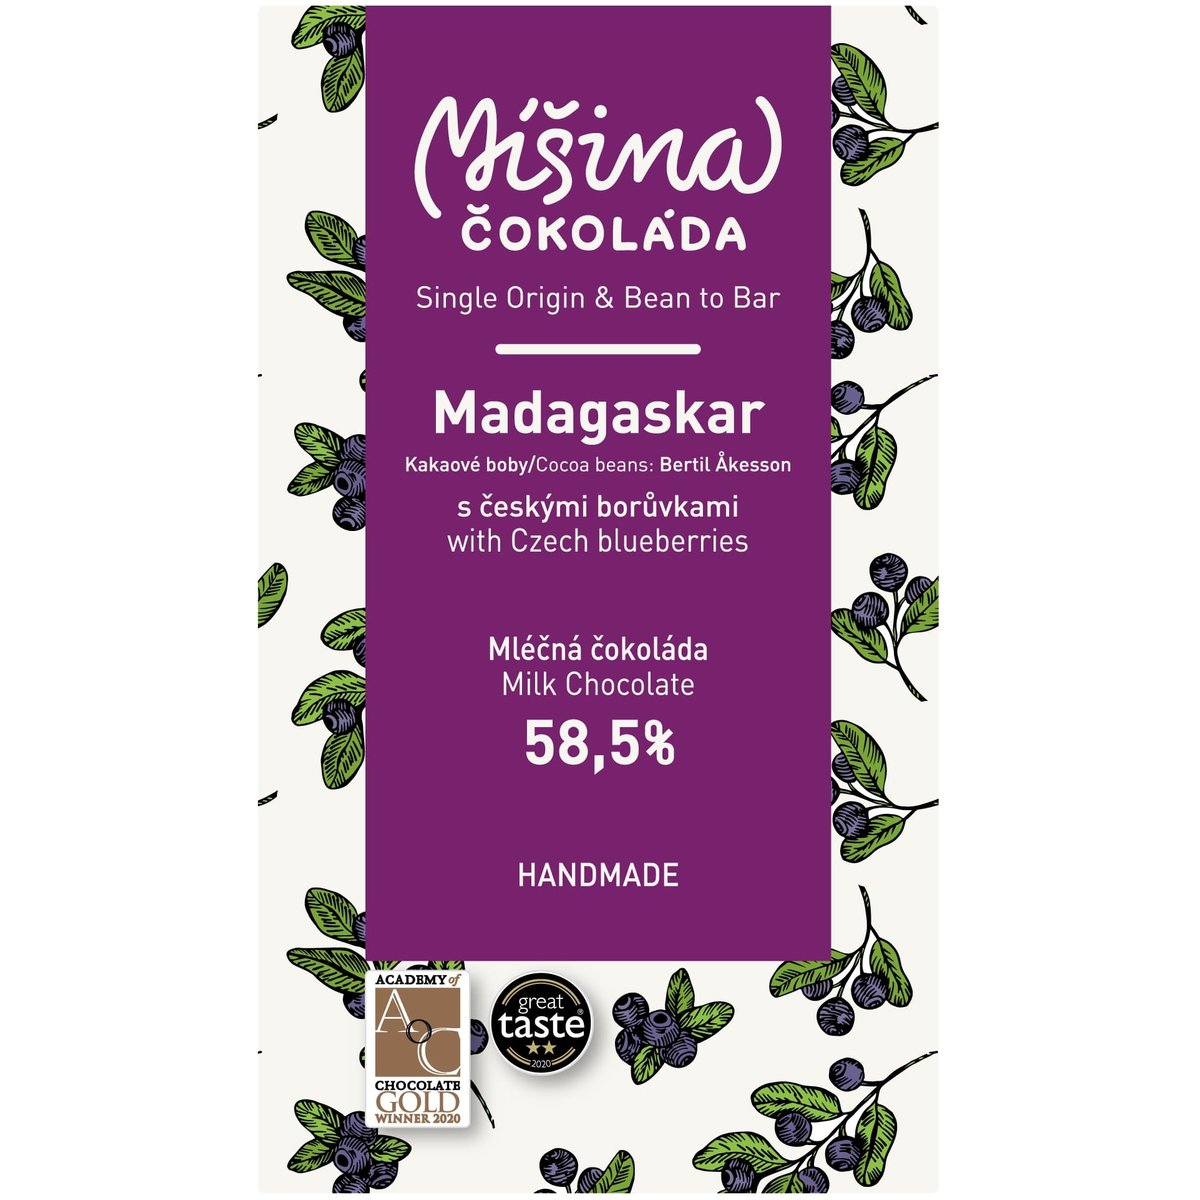 Míšina čokoláda Mléčná čokoláda Madagaskar 58,5% s českými borůvkami